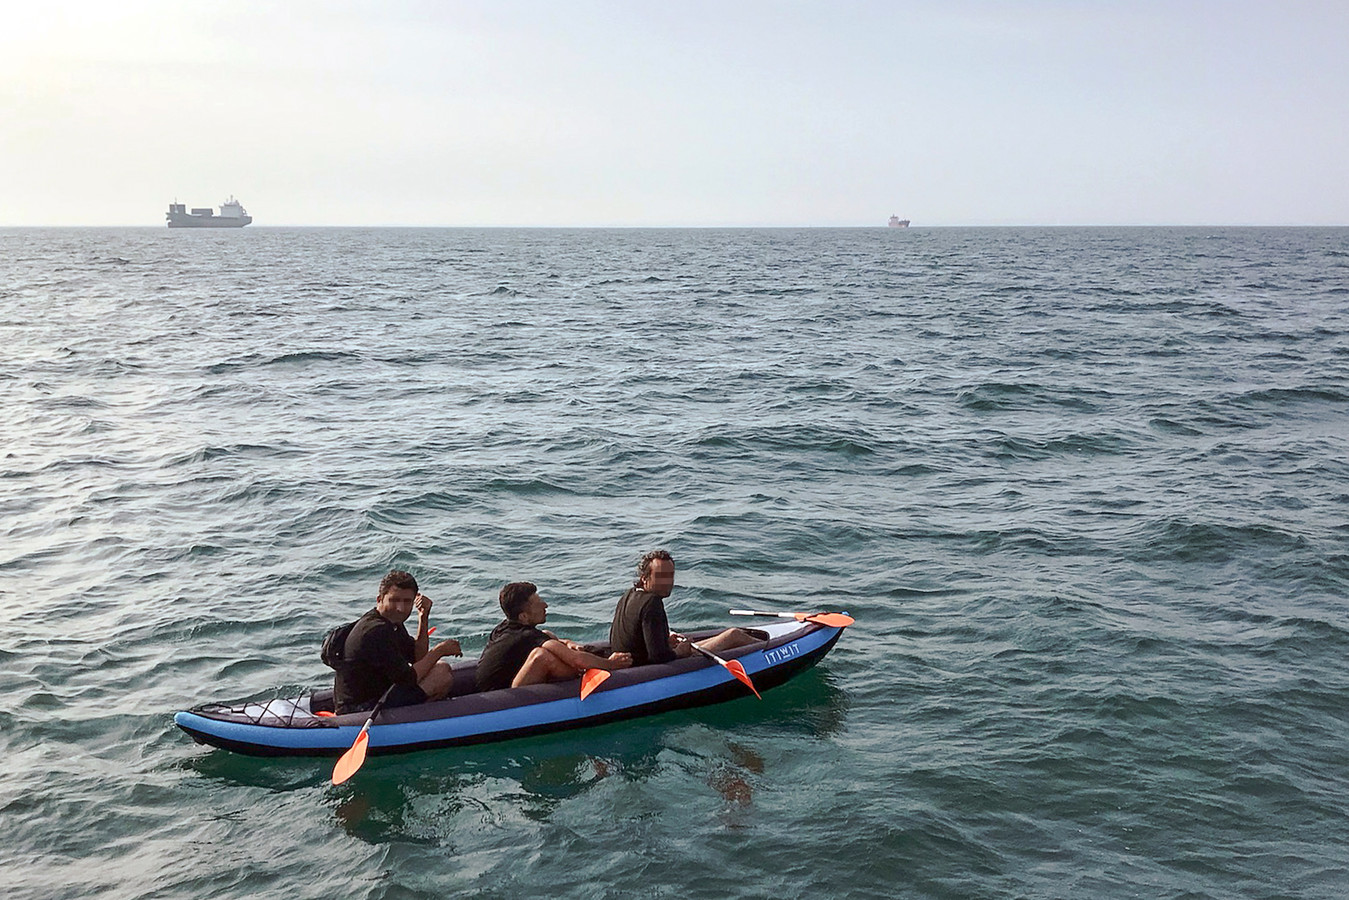 Vluchtelingen proberen regelmatig het Kanaal over te steken, zoals dit kanovarende drietal in augustus vorig jaar.